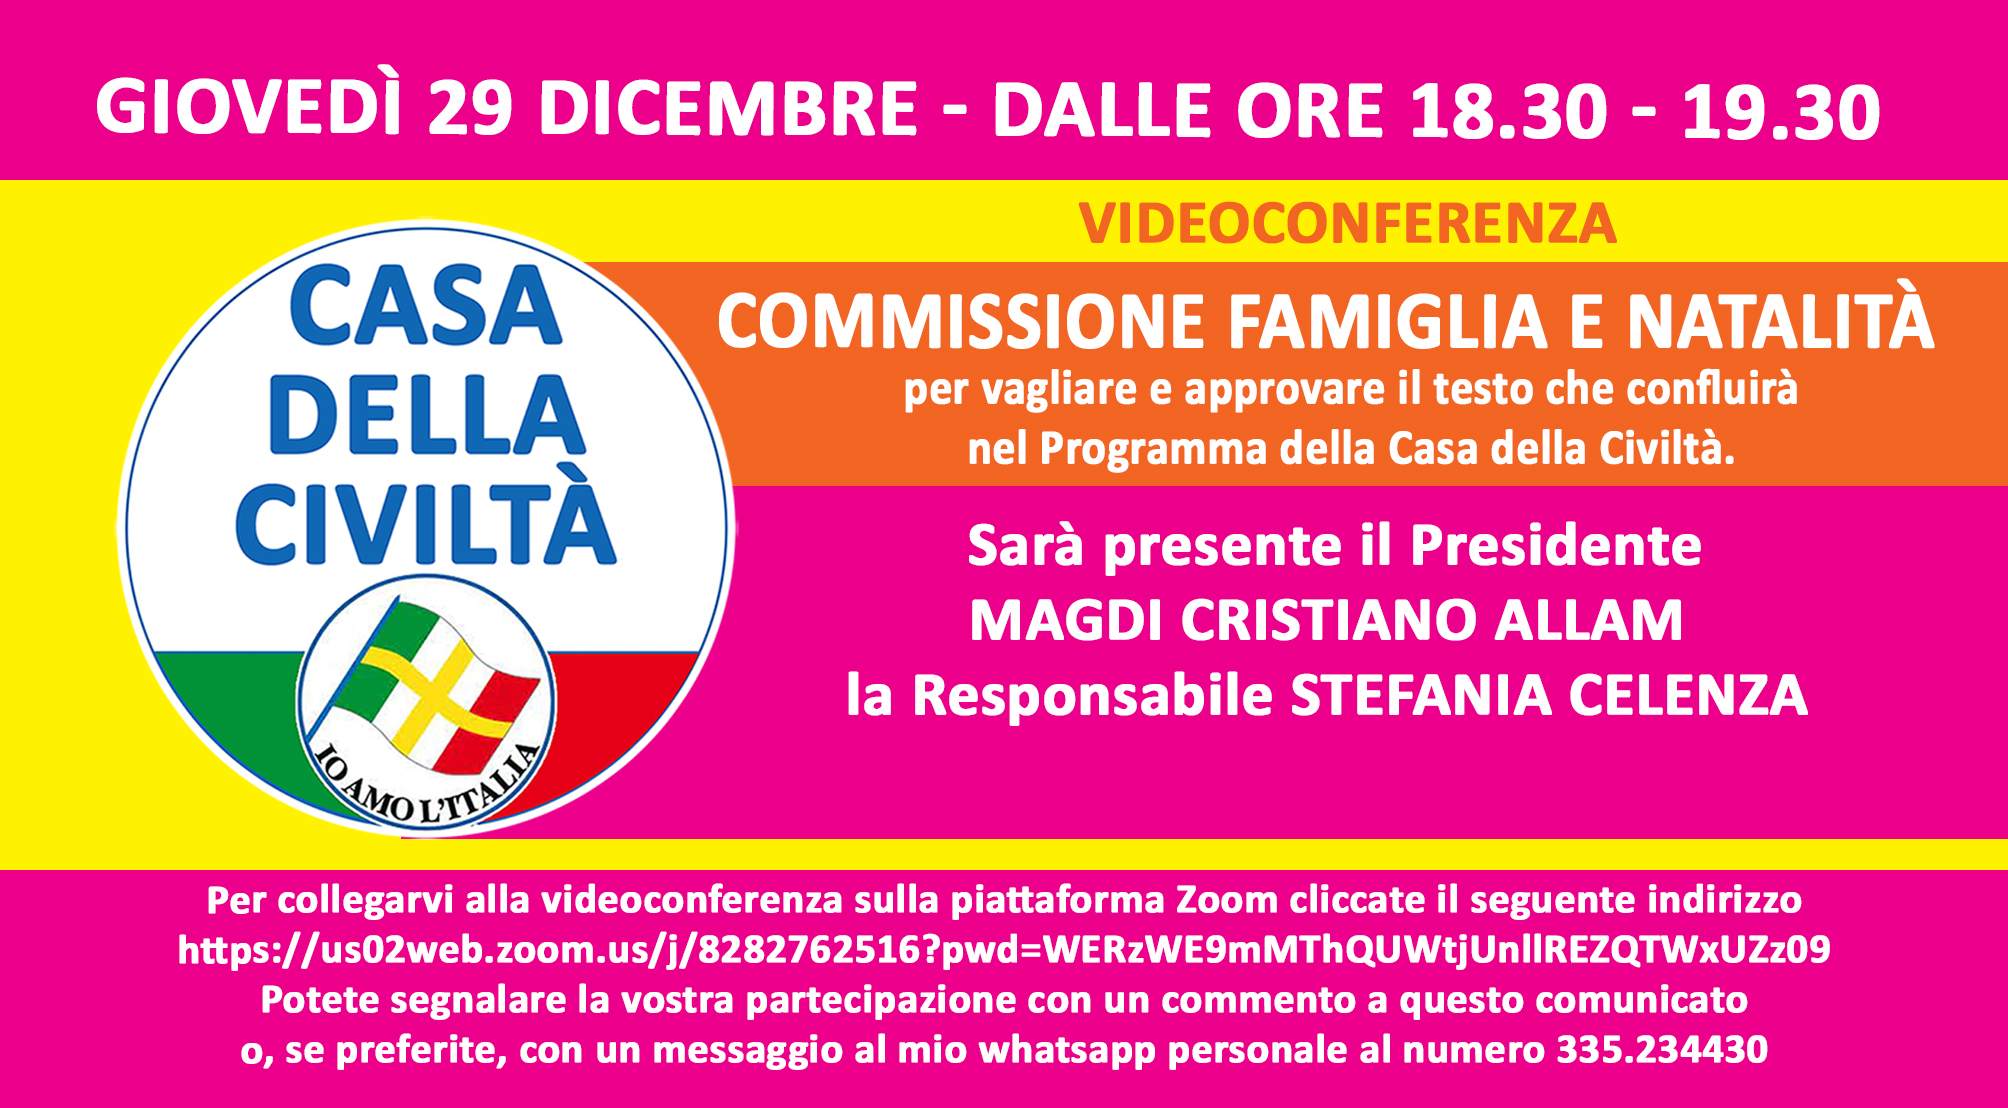 Giovedì 29 dicembre, dalle ore 18.30 alle ore 19.30, videoconferenza della Commissione Famiglia e Natalità. Gli iscritti alla Casa della Civiltà possono partecipare